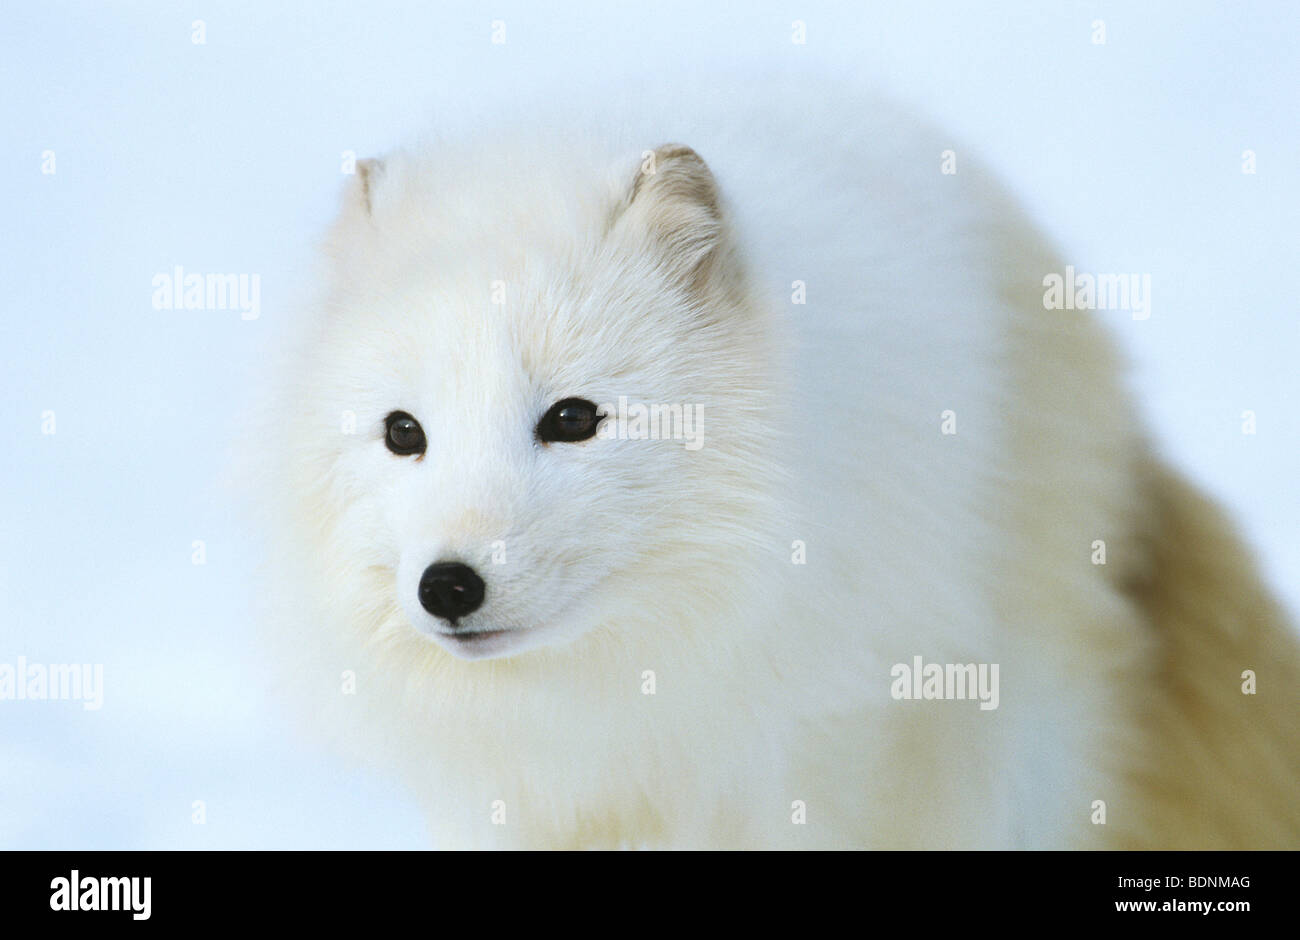 Le renard arctique dans la neige, close-up Banque D'Images